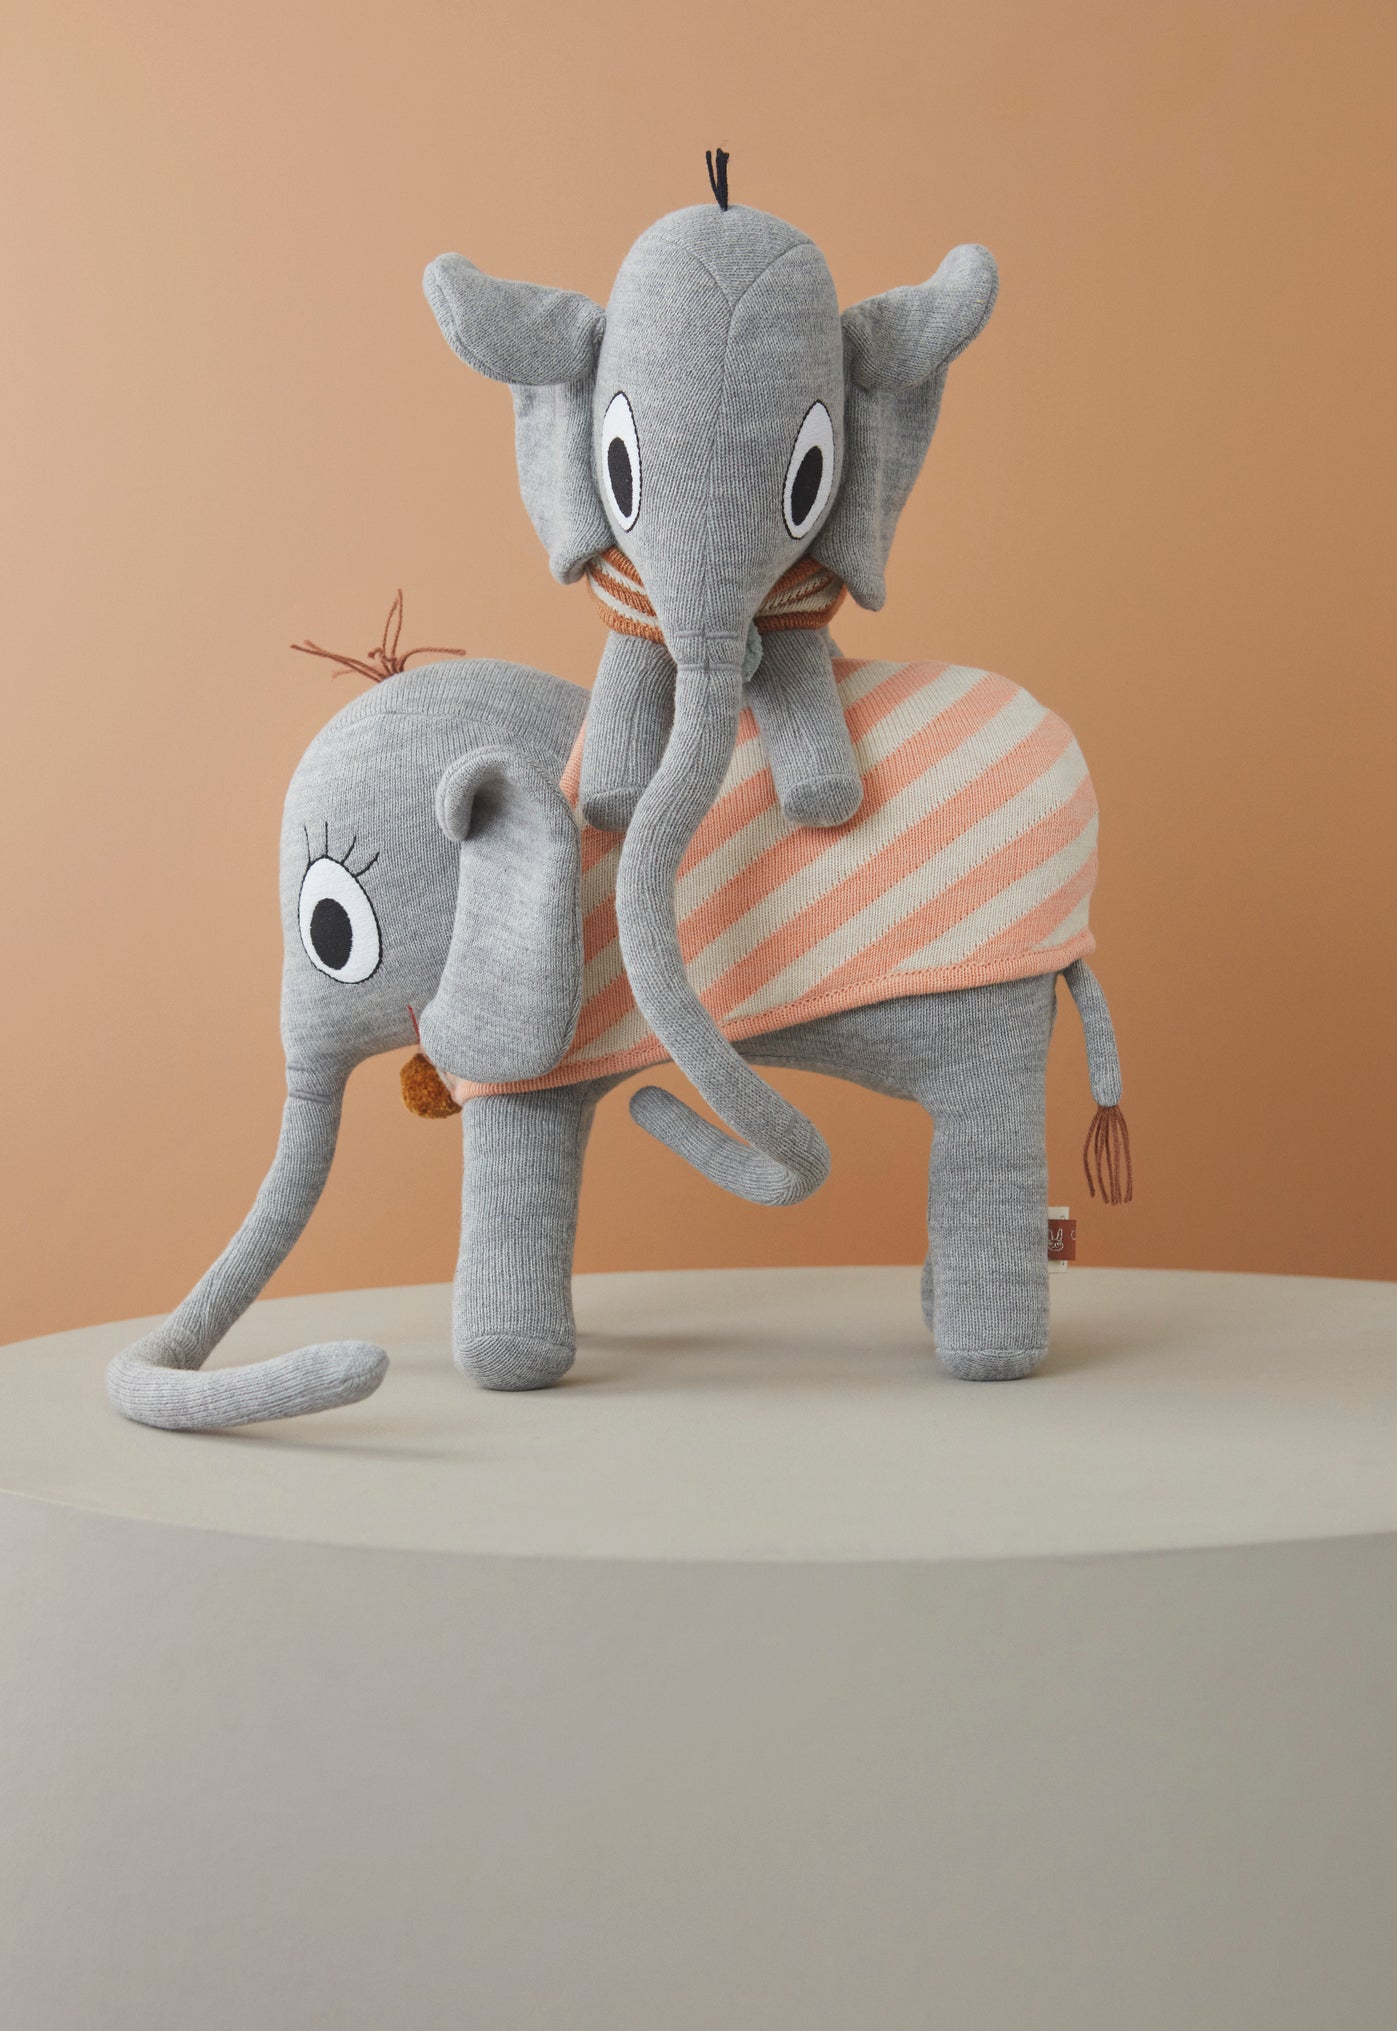 OYOY Ramboline Elephant Soft Toy